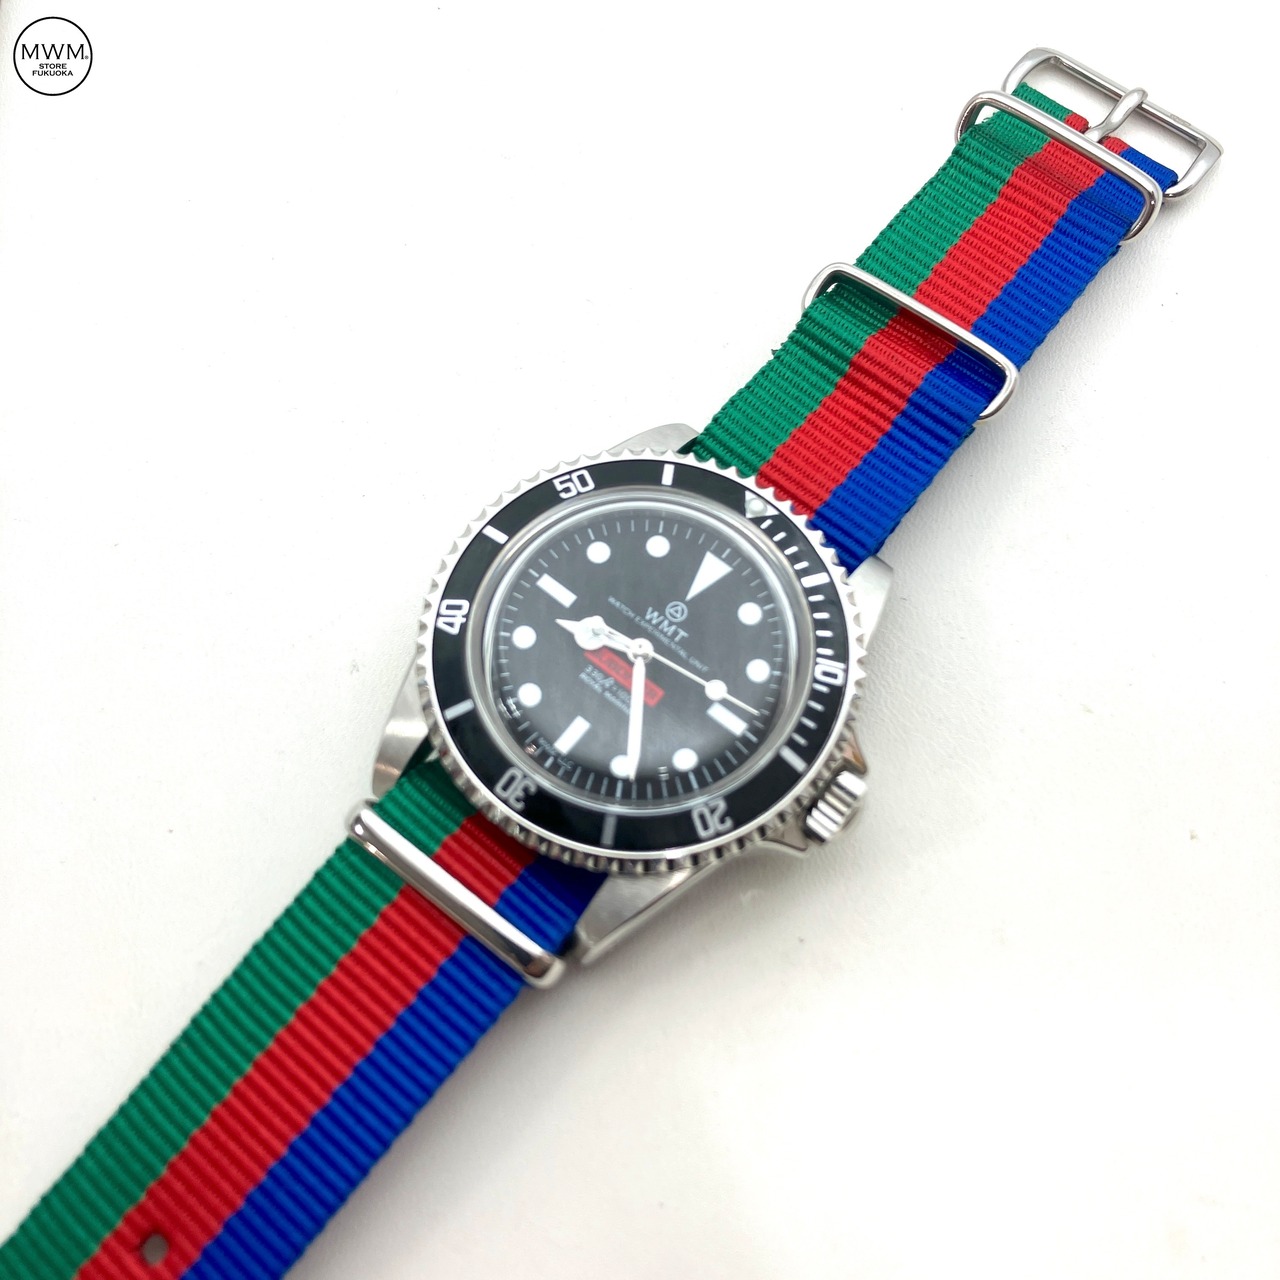 スタンダードNATOナイロンストラップ グリーン,レッド/ブルー 20mm幅 腕時計ベルト